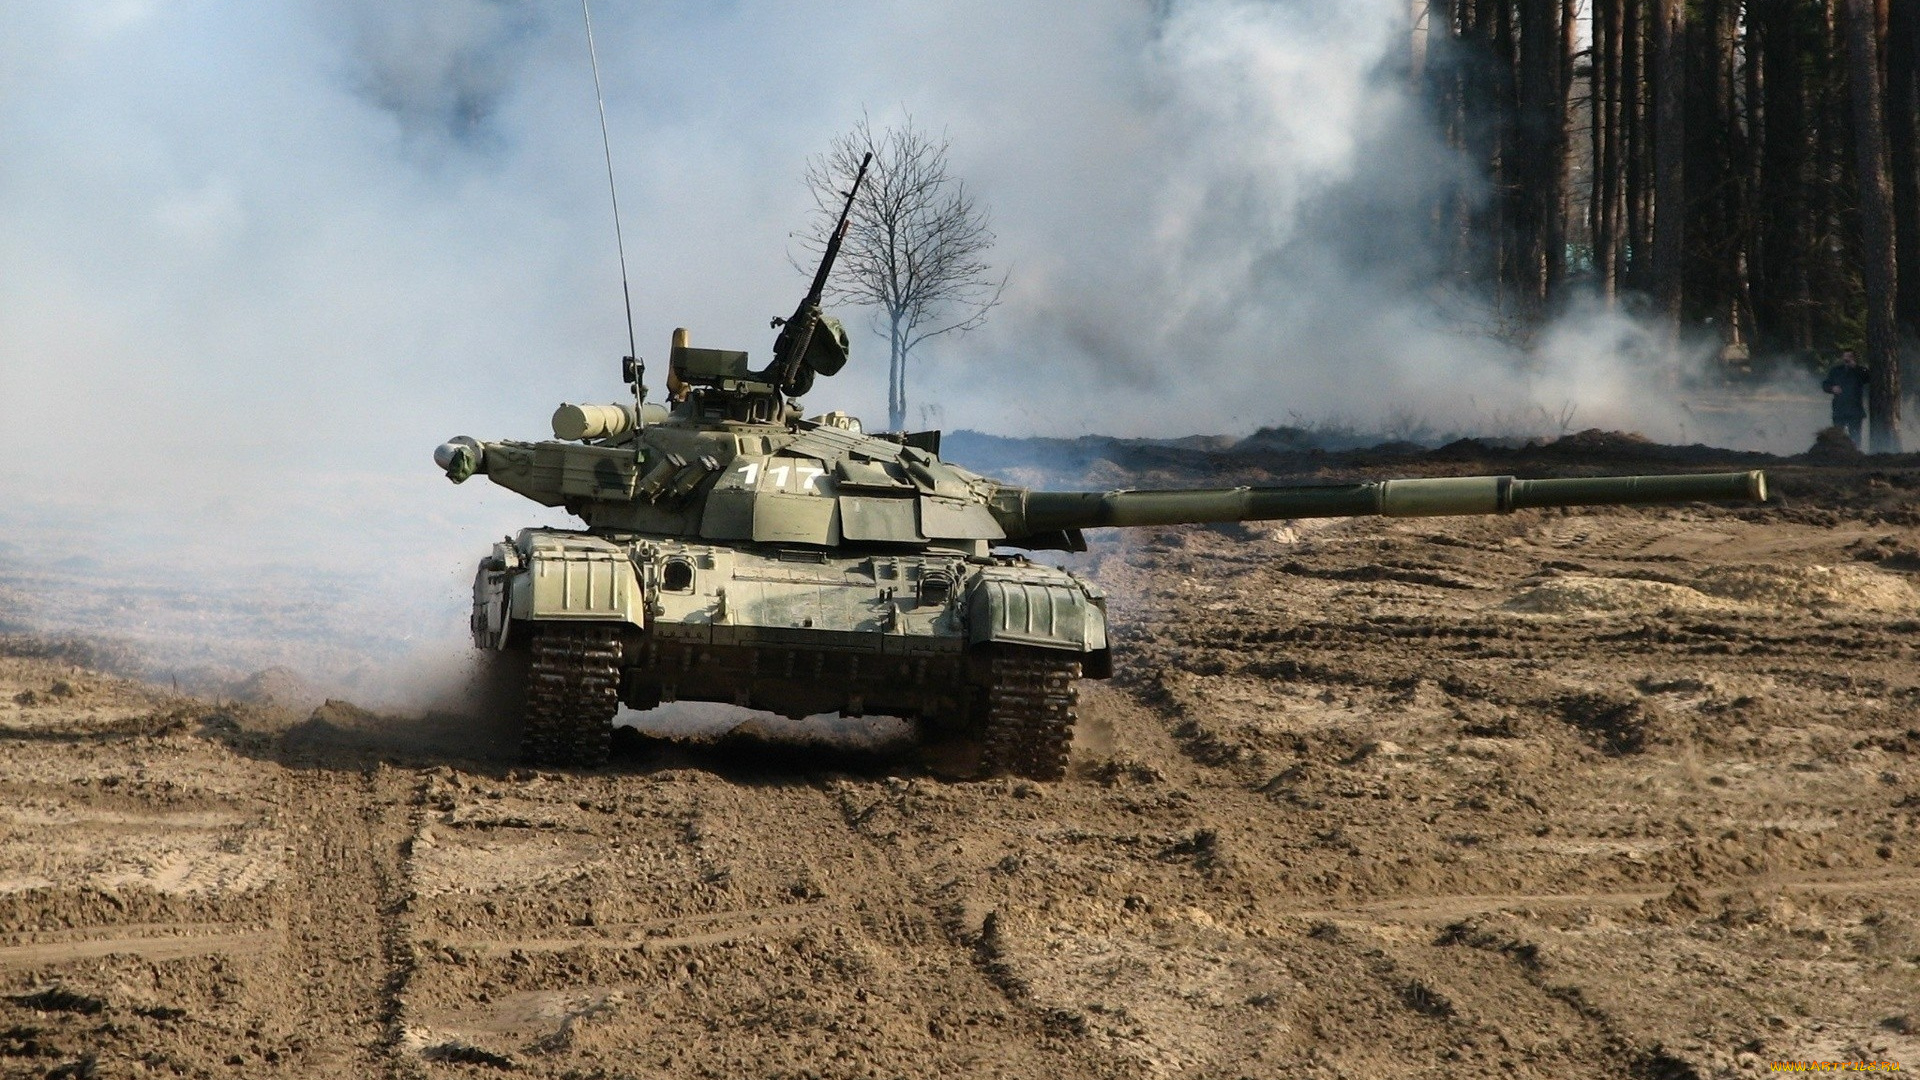 т-64бм, булат, техника, военная, техника, т-64бм, булат, основной, украинский, военная, боевой, танк